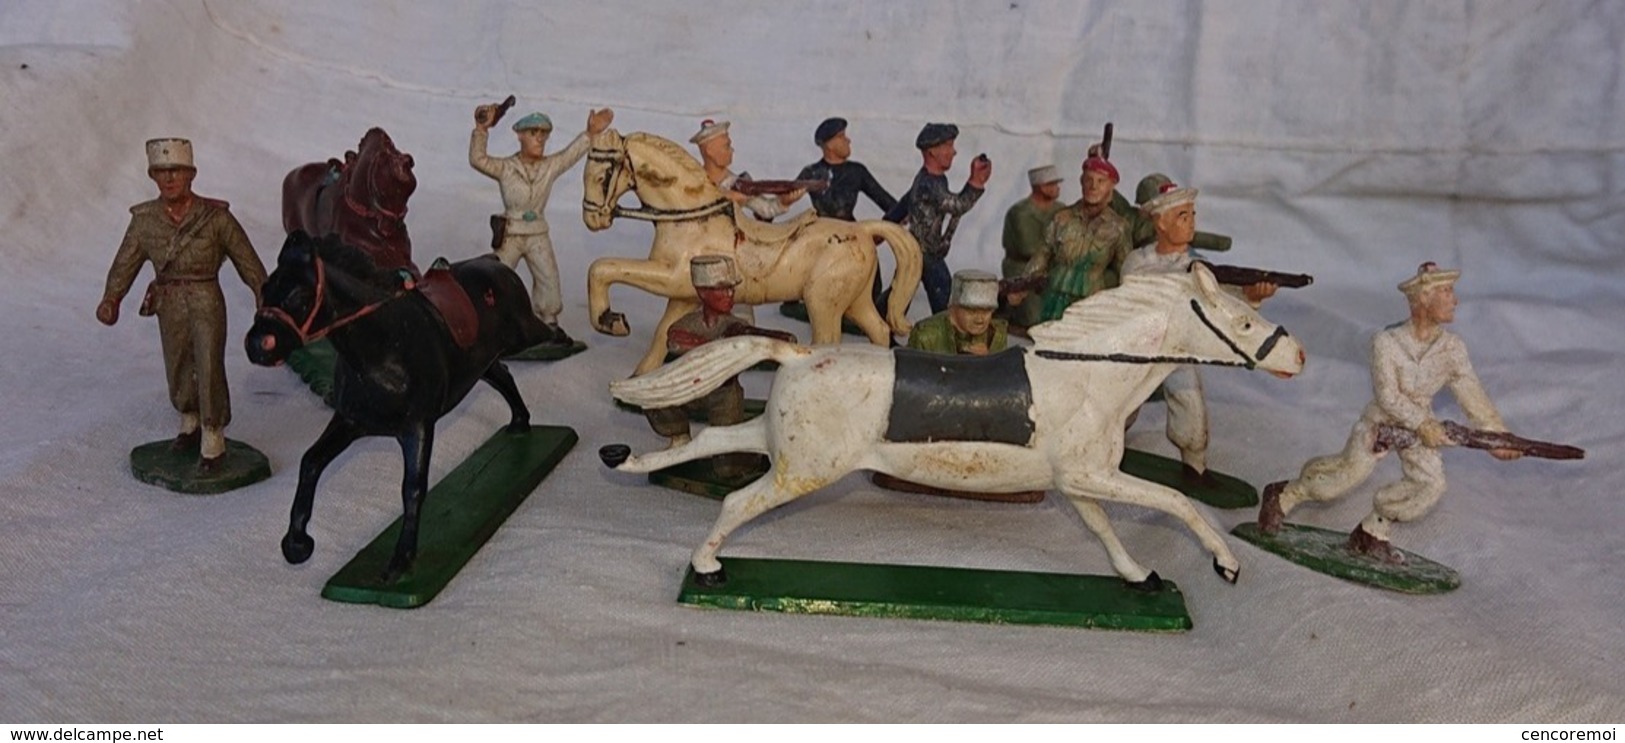 ancien jouet lot de soldats en plastique Starlux, marins, chevaux